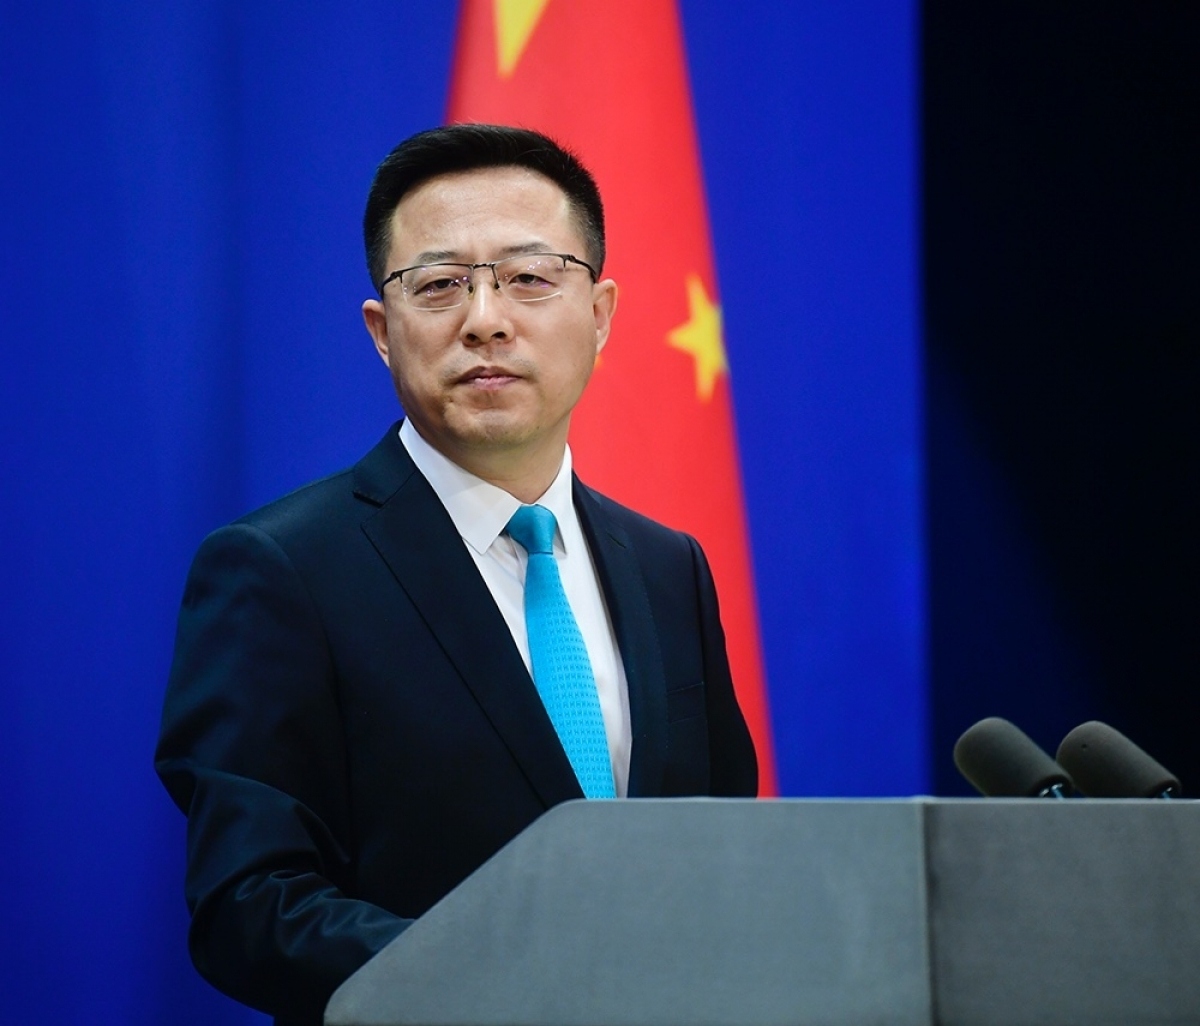 Trung Quốc ban hành sách trắng “Hợp tác Trung Quốc - châu Phi trong kỷ nguyên mới”